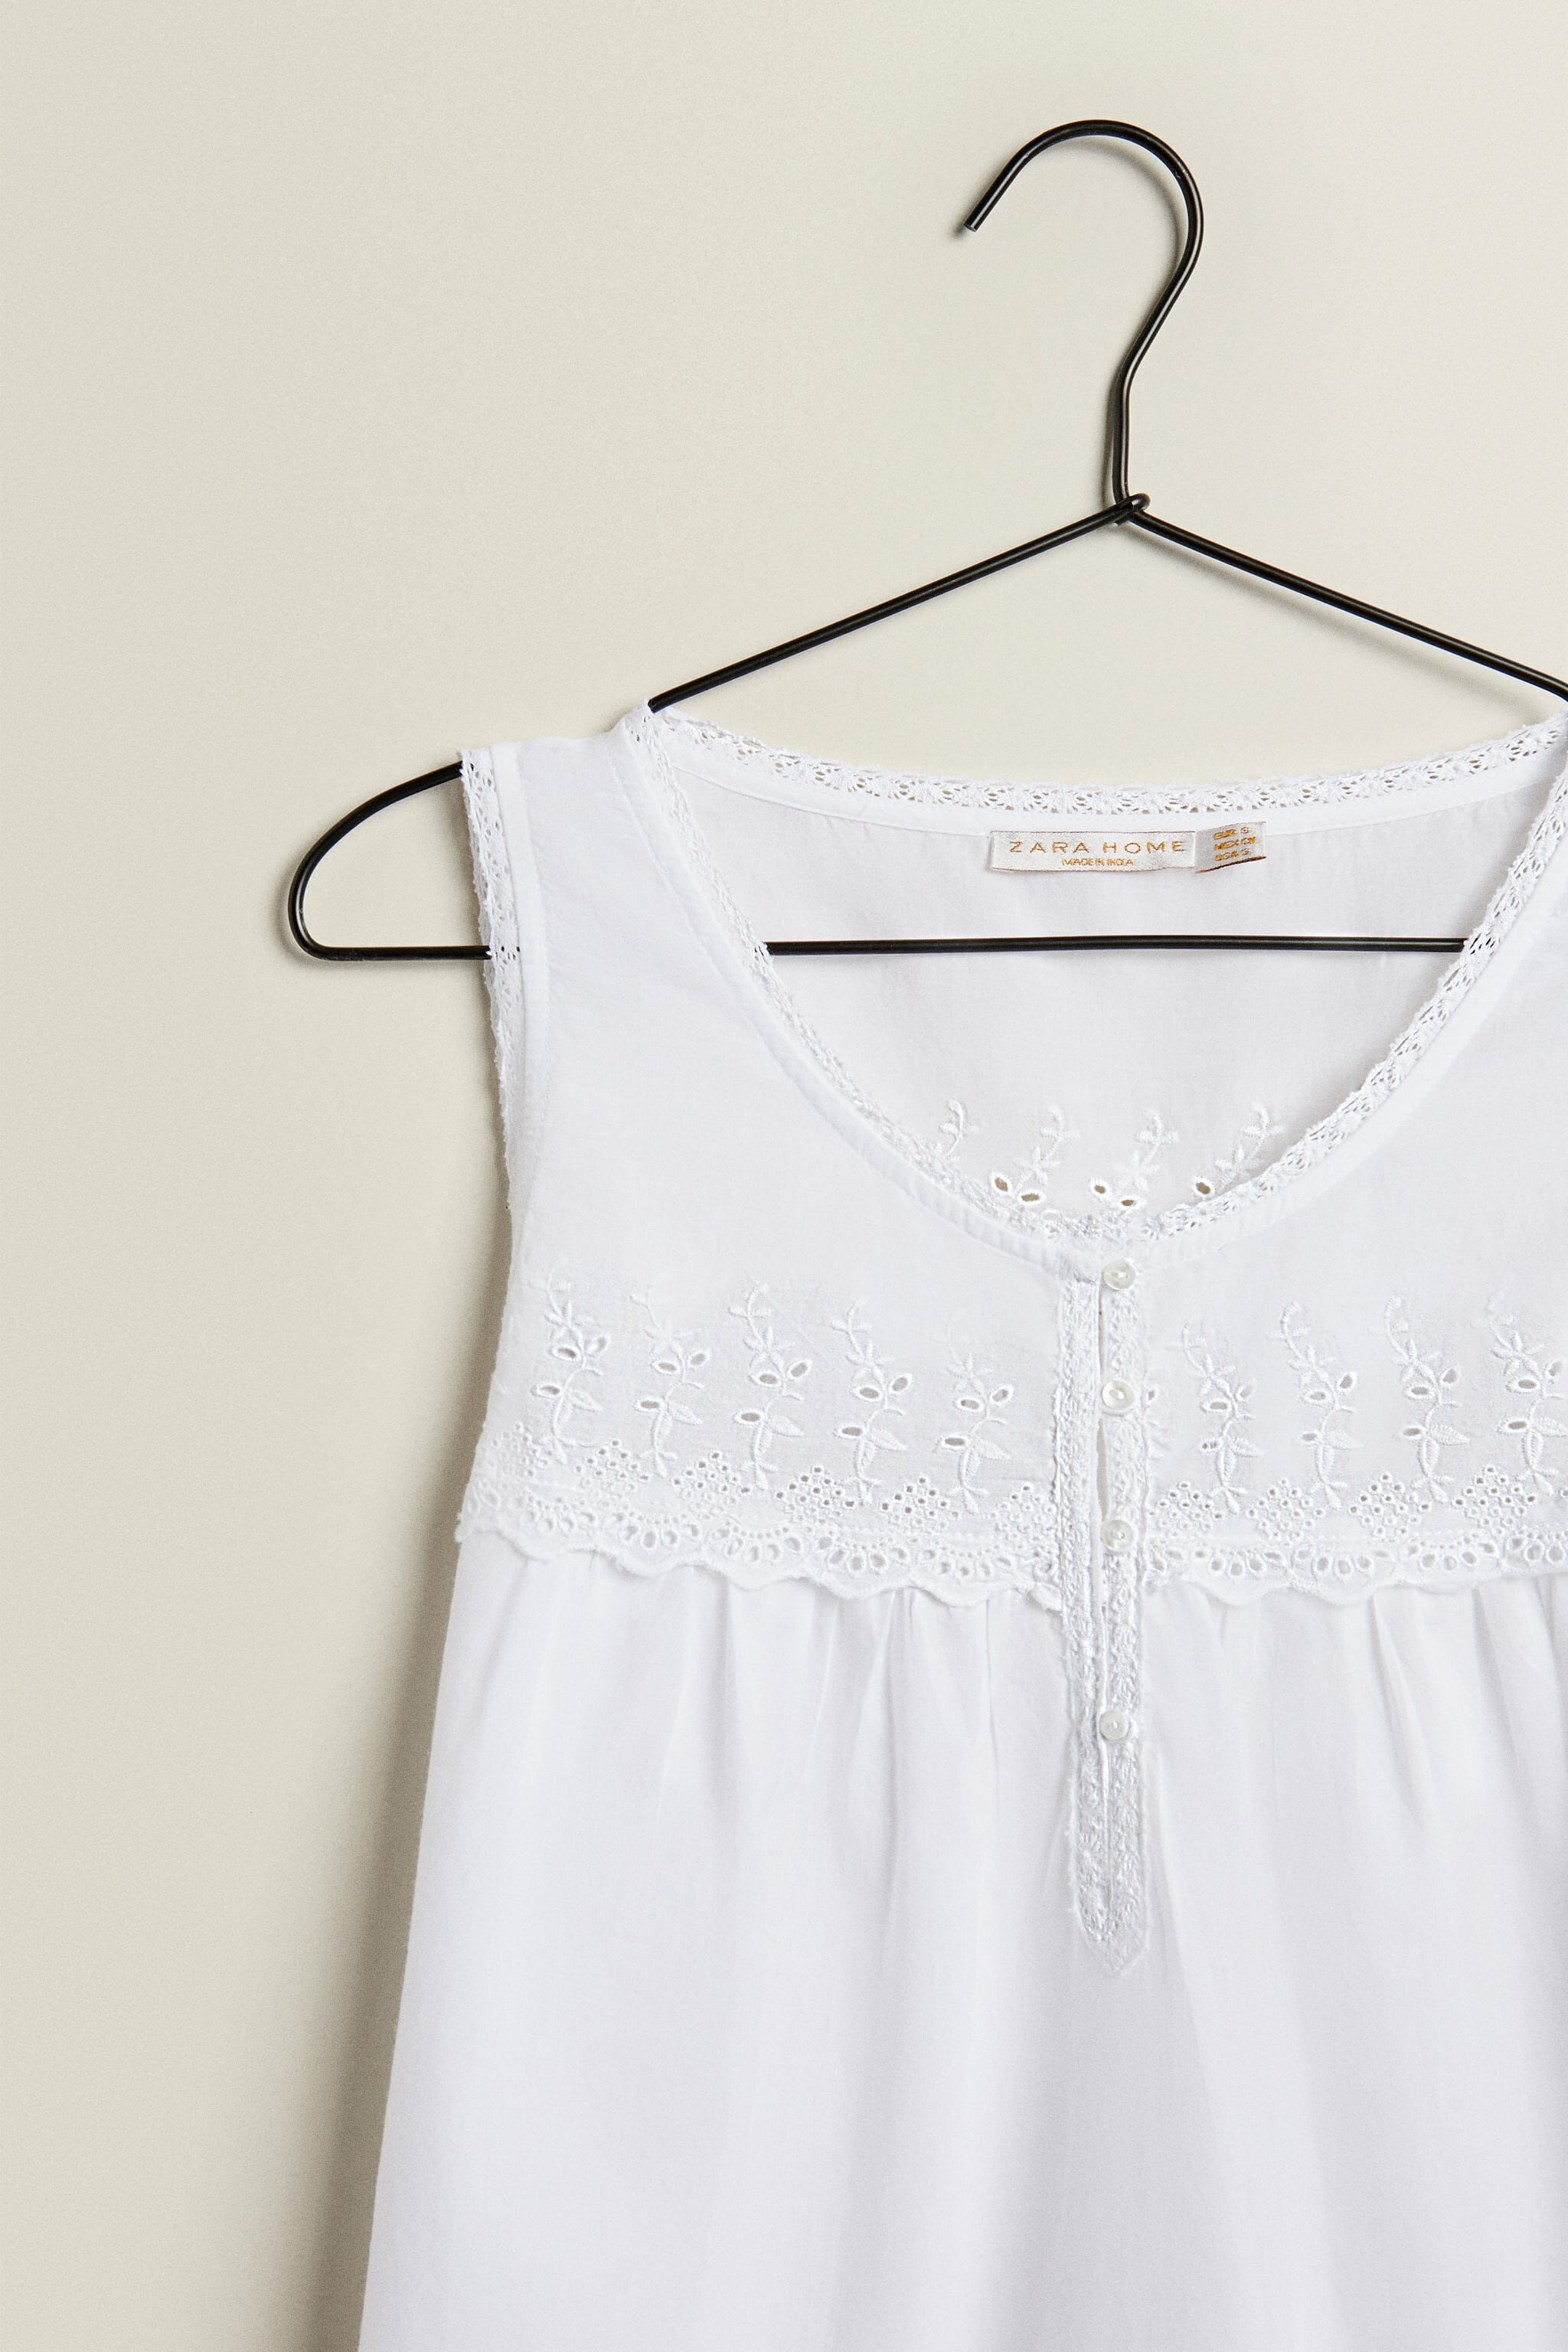 Пижама, ночная сорочка женская ZARAHOME, белый, XL - фотография № 7